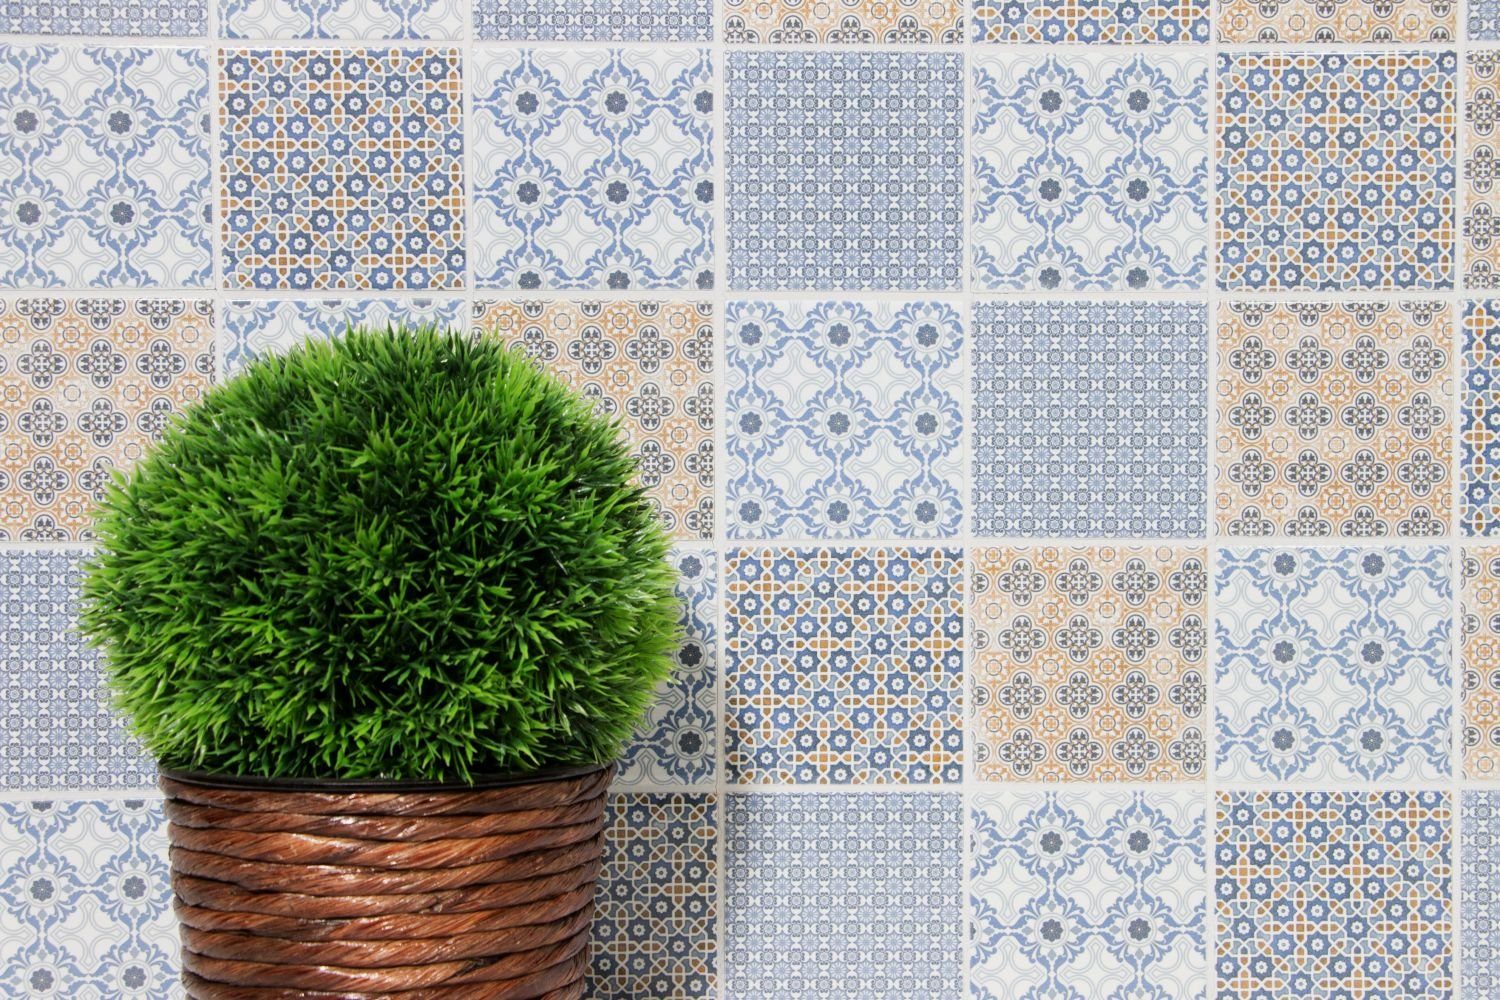 Mosani Mosaikfliesen Retro Vintage Mosaik weiß orange grau Küche blau Fliesenspiegel